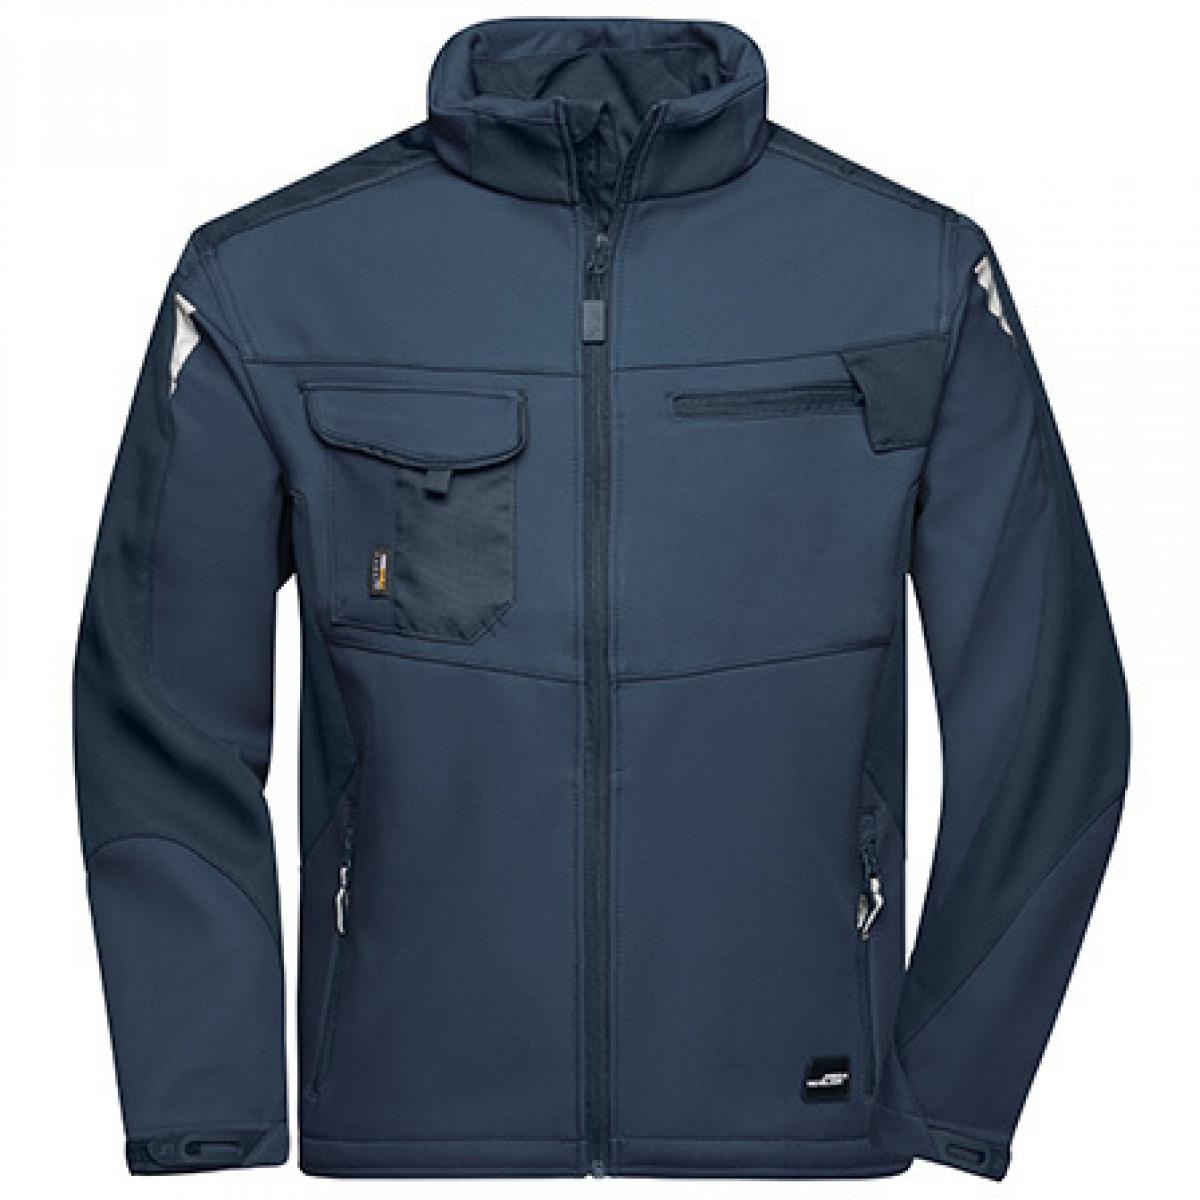 Hersteller: James+Nicholson Herstellernummer: JN844 Artikelbezeichnung: Herren Jacke, Workwear Softshell Jacket -STRONG- Farbe: Navy/Navy